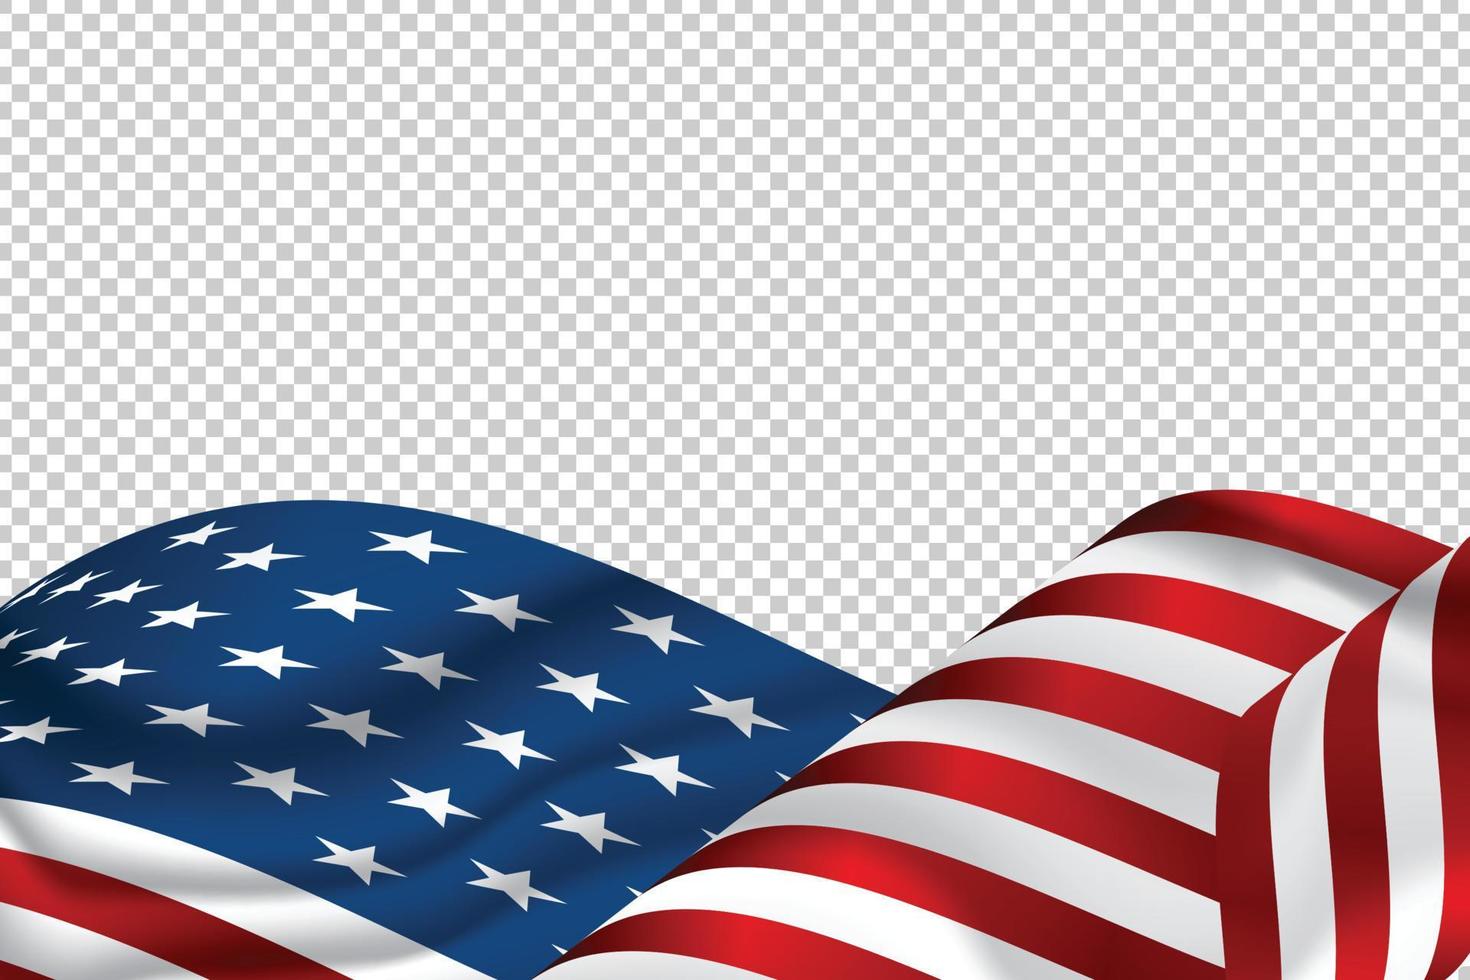 Amerikaanse vlag voor onafhankelijkheidsdag. op transparante achtergrond. vector